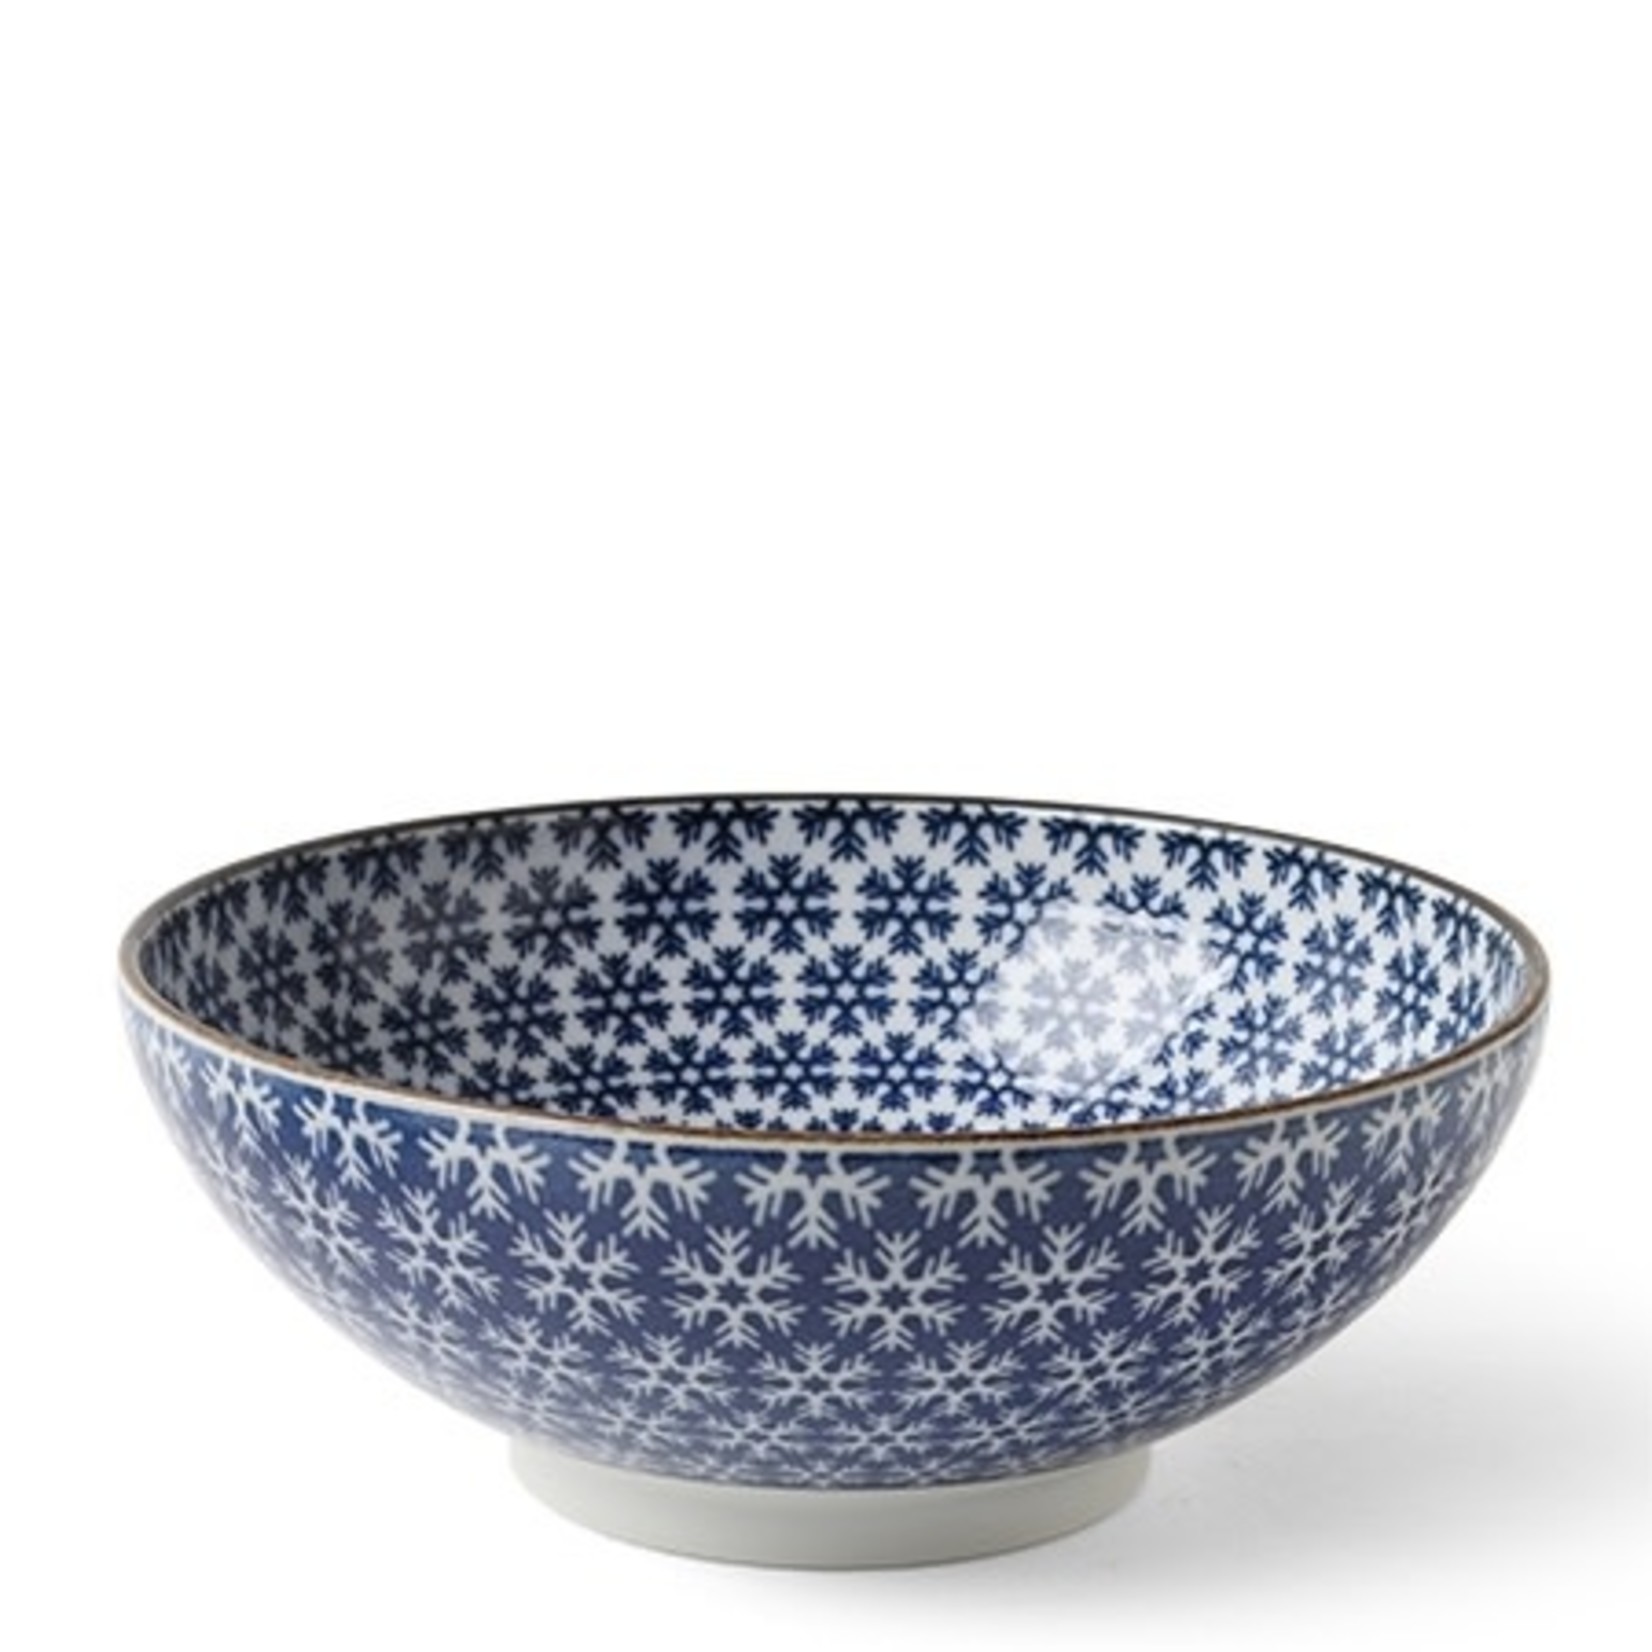 Bowl - Blue & White Snowflake 8.25" - J4875